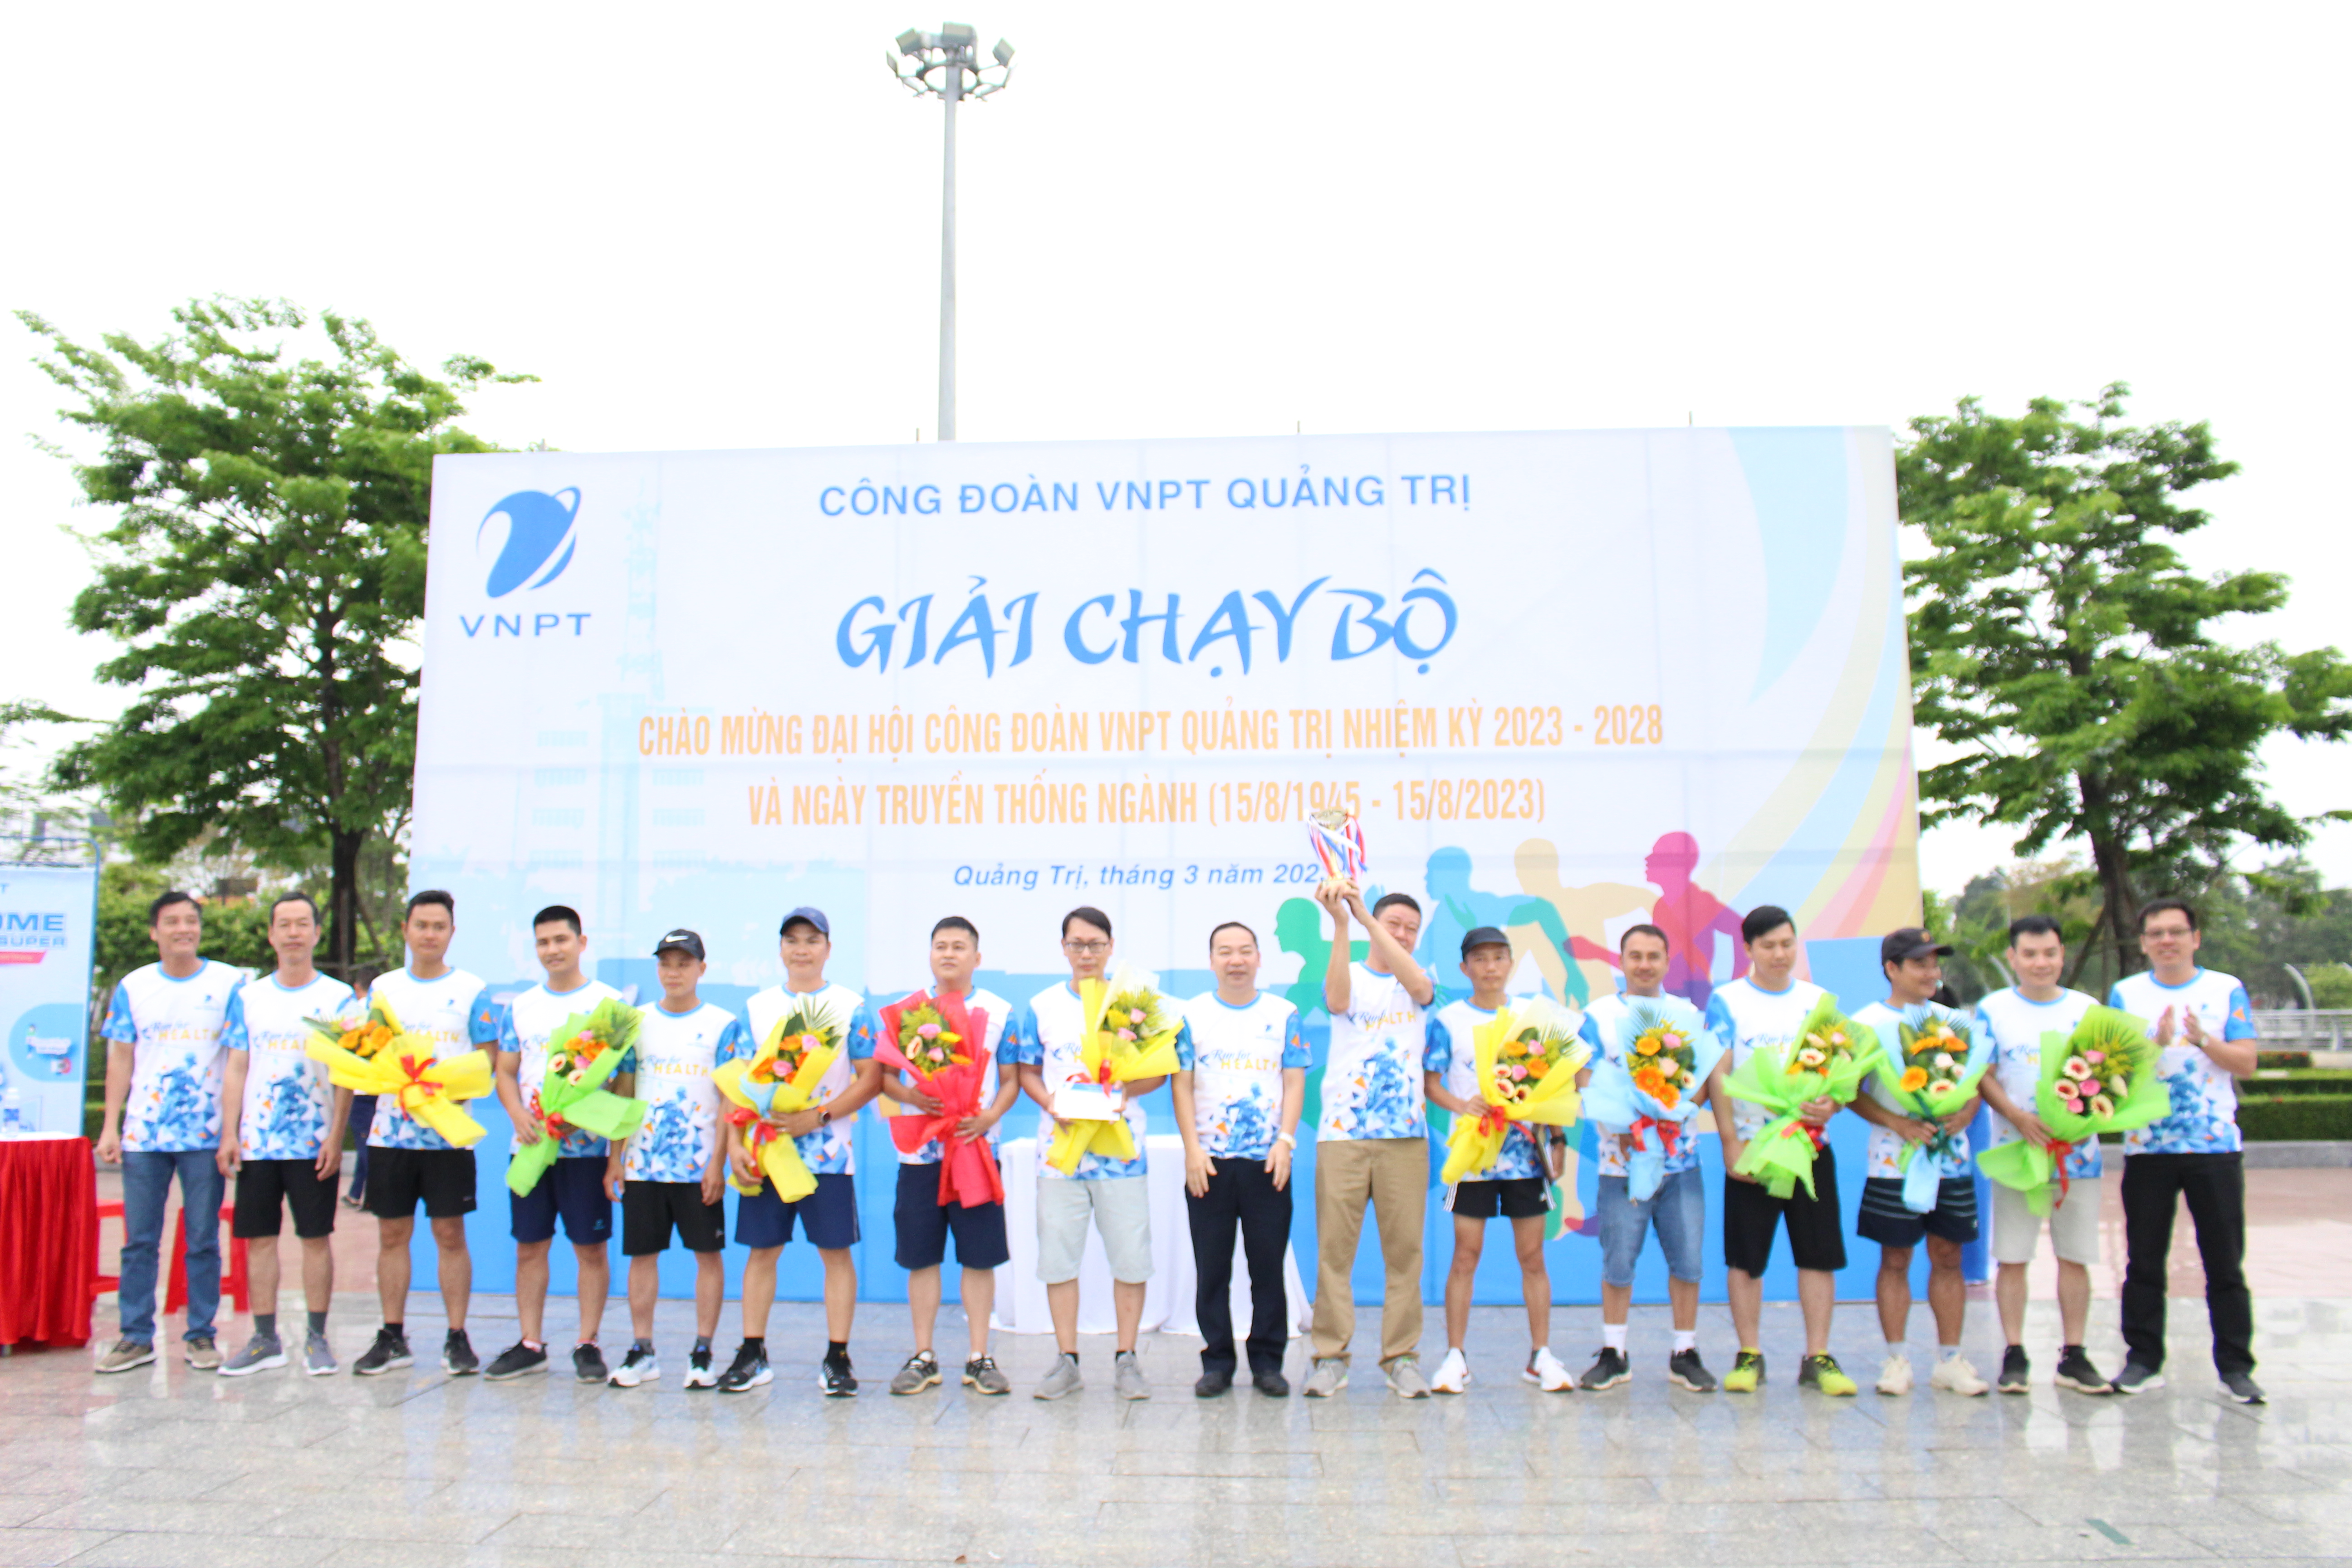 VNPT Quảng Trị tổ chức lễ trao giải chương trình chạy bộ chào mừng Đại hội Công đoàn VNPT Quảng Trị nhiệm kỳ 2023-2028